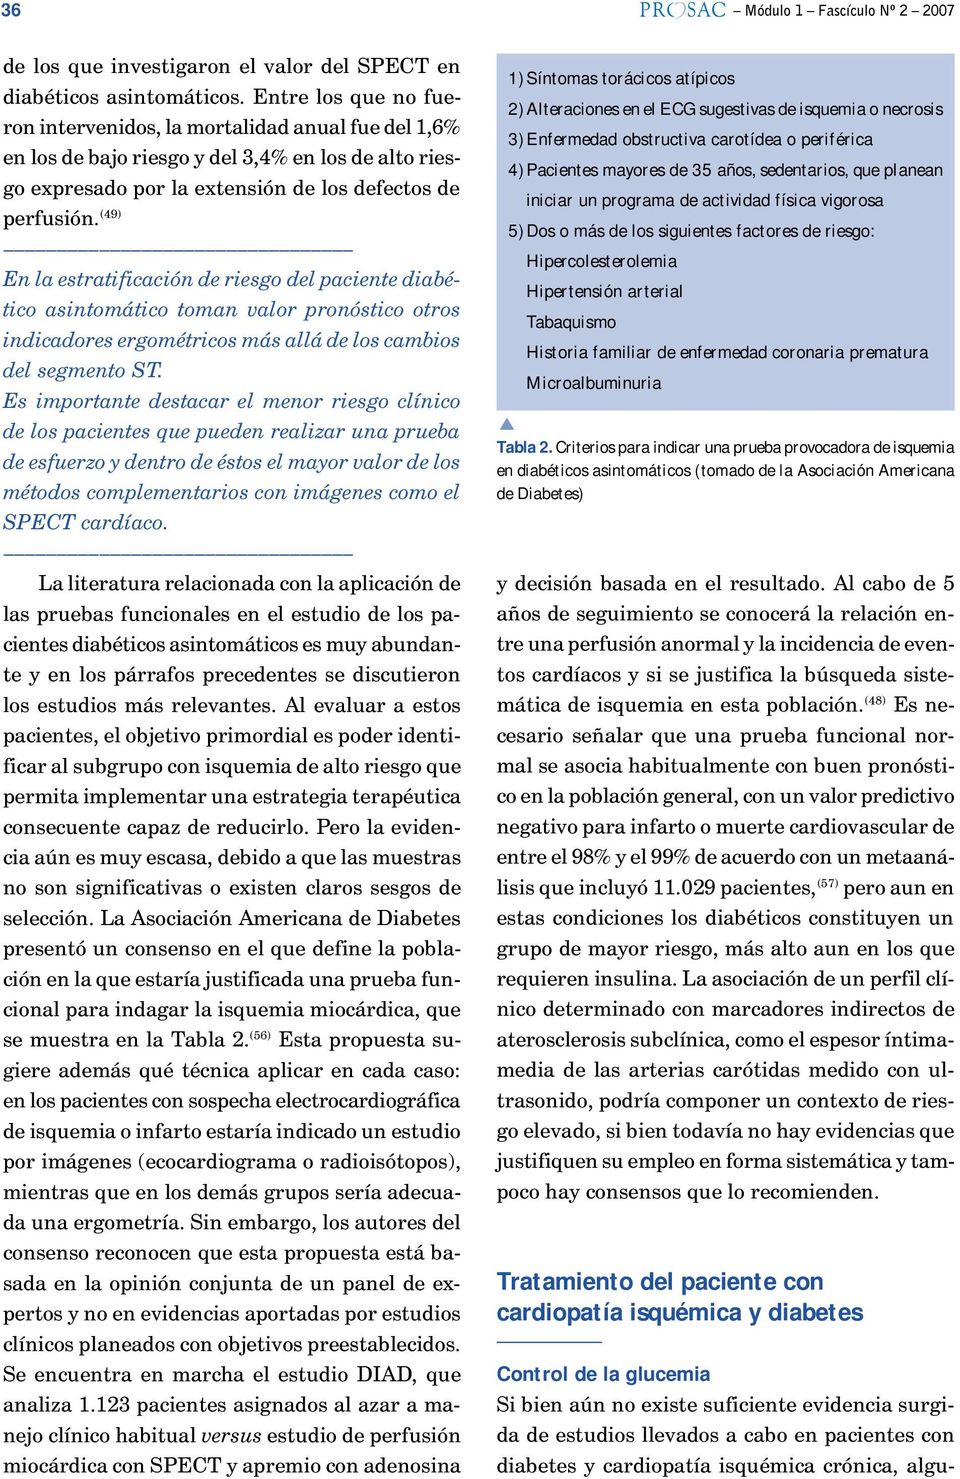 Hipertensión arterial Tabaquismo Historia familiar de enfermedad coronaria prematura Microalbuminuria Tabla 2.